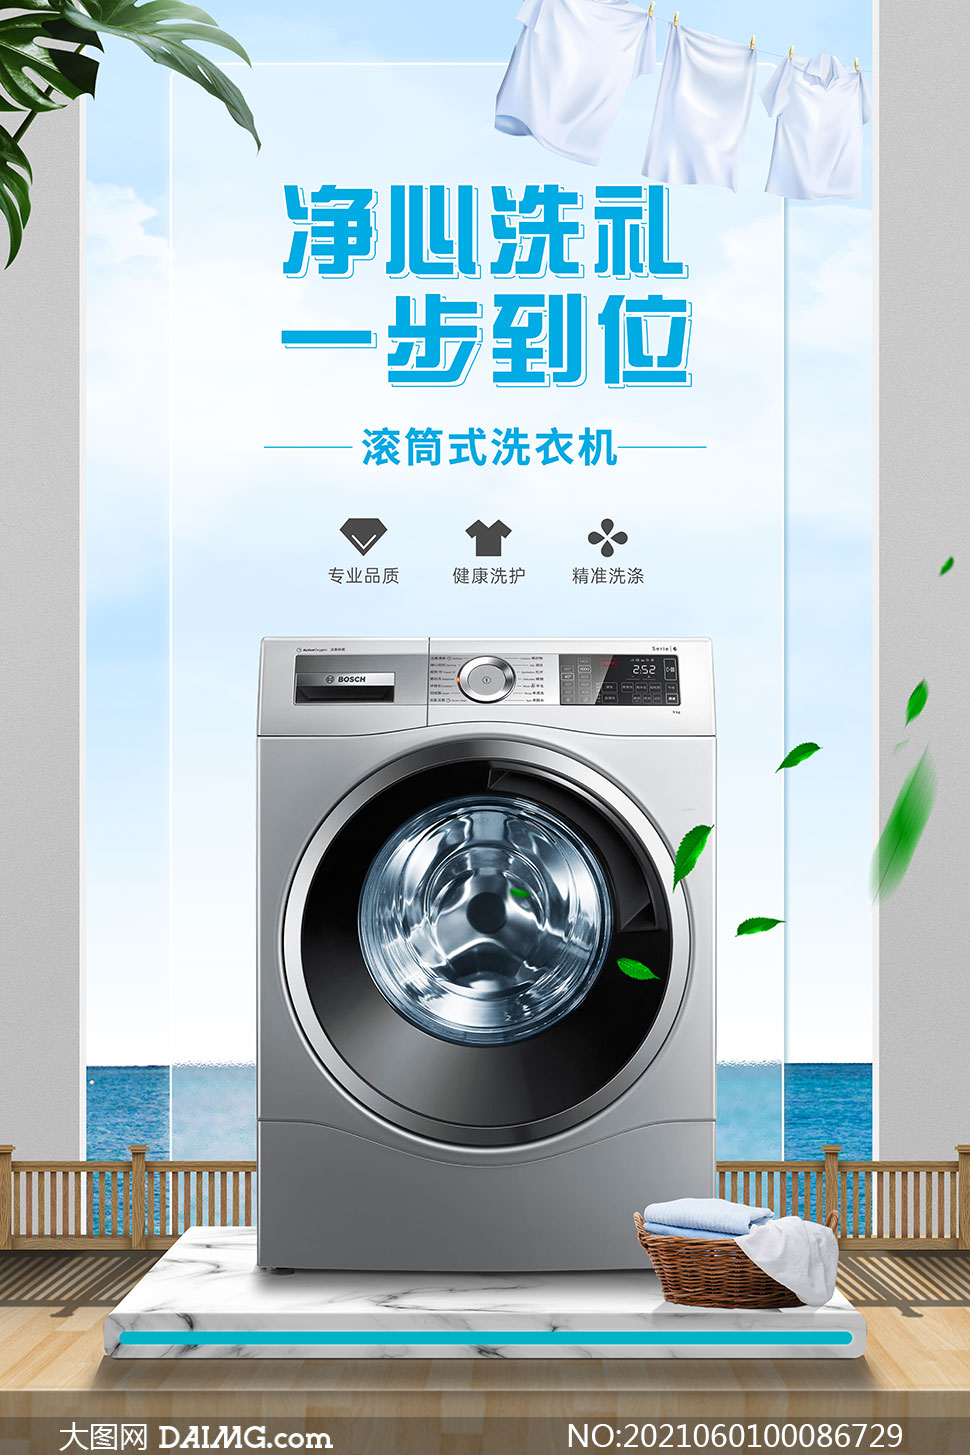 滚筒式洗衣机宣传海报设计psd素材